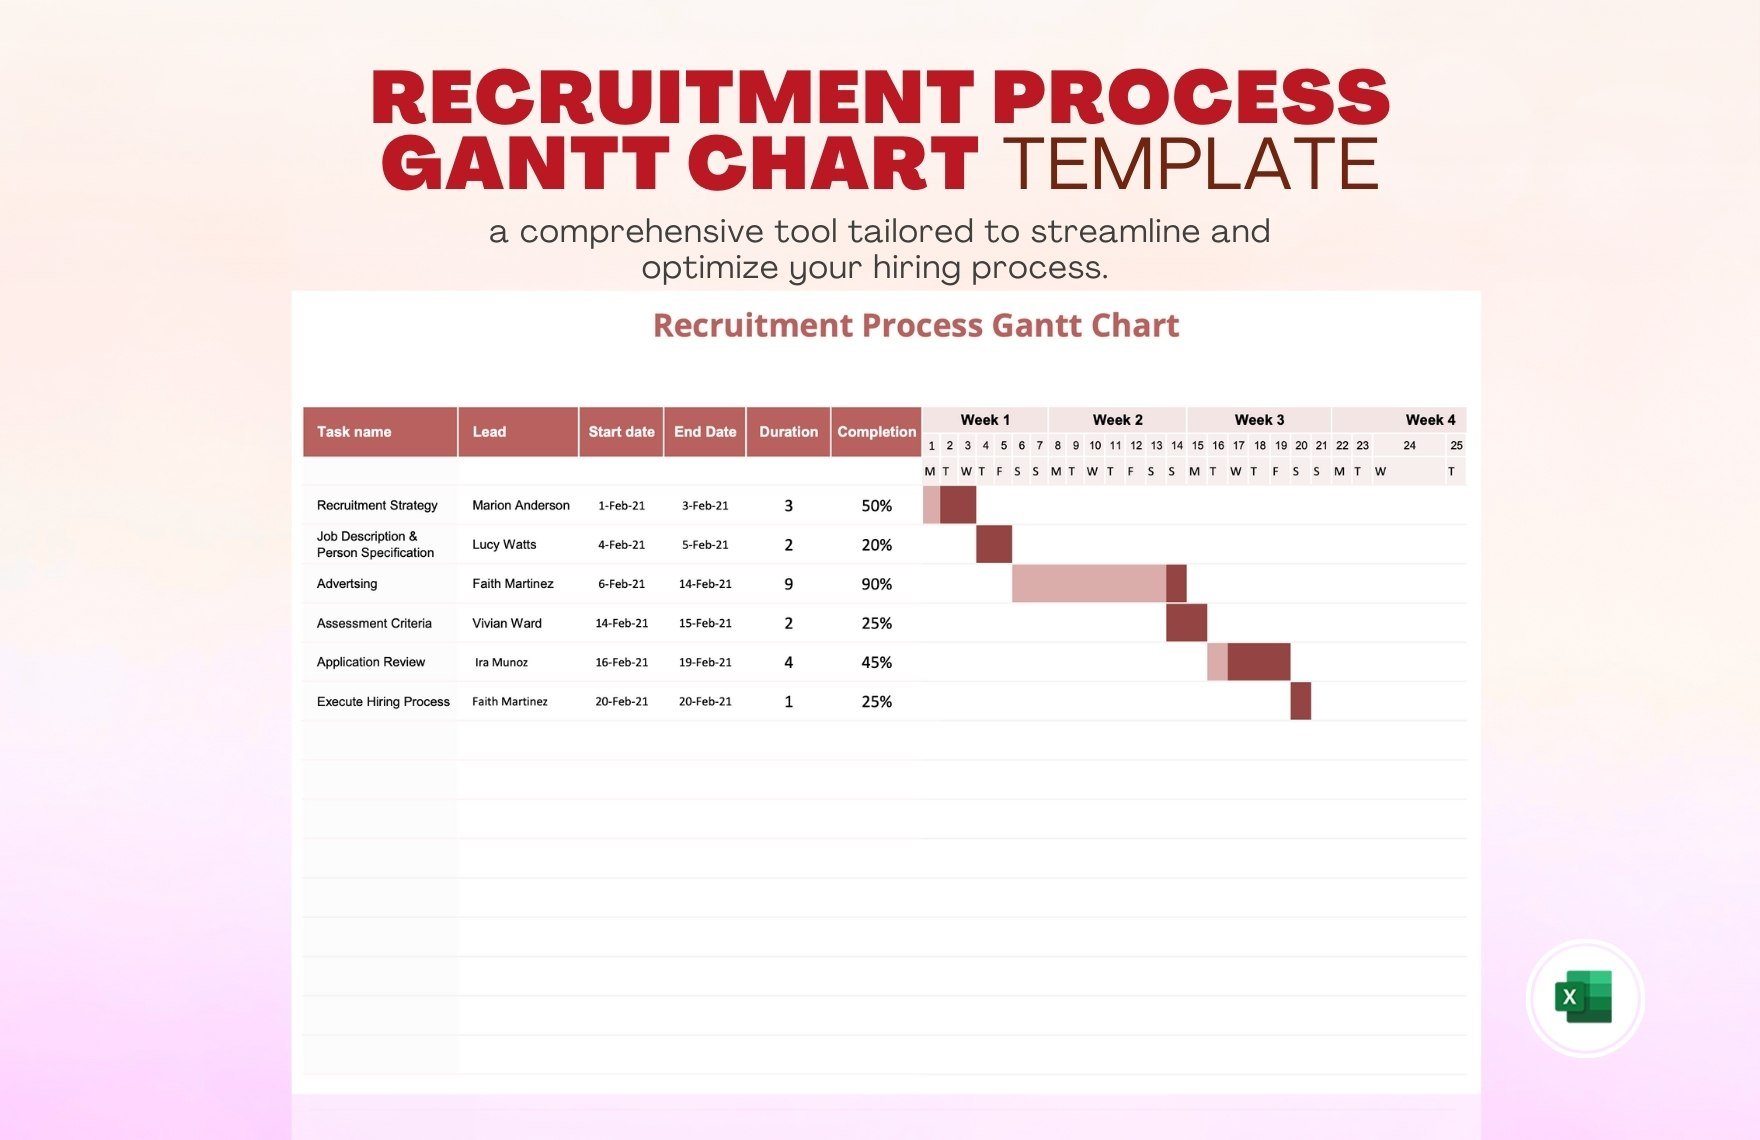 Recruitment Process Gantt Chart Template in Excel